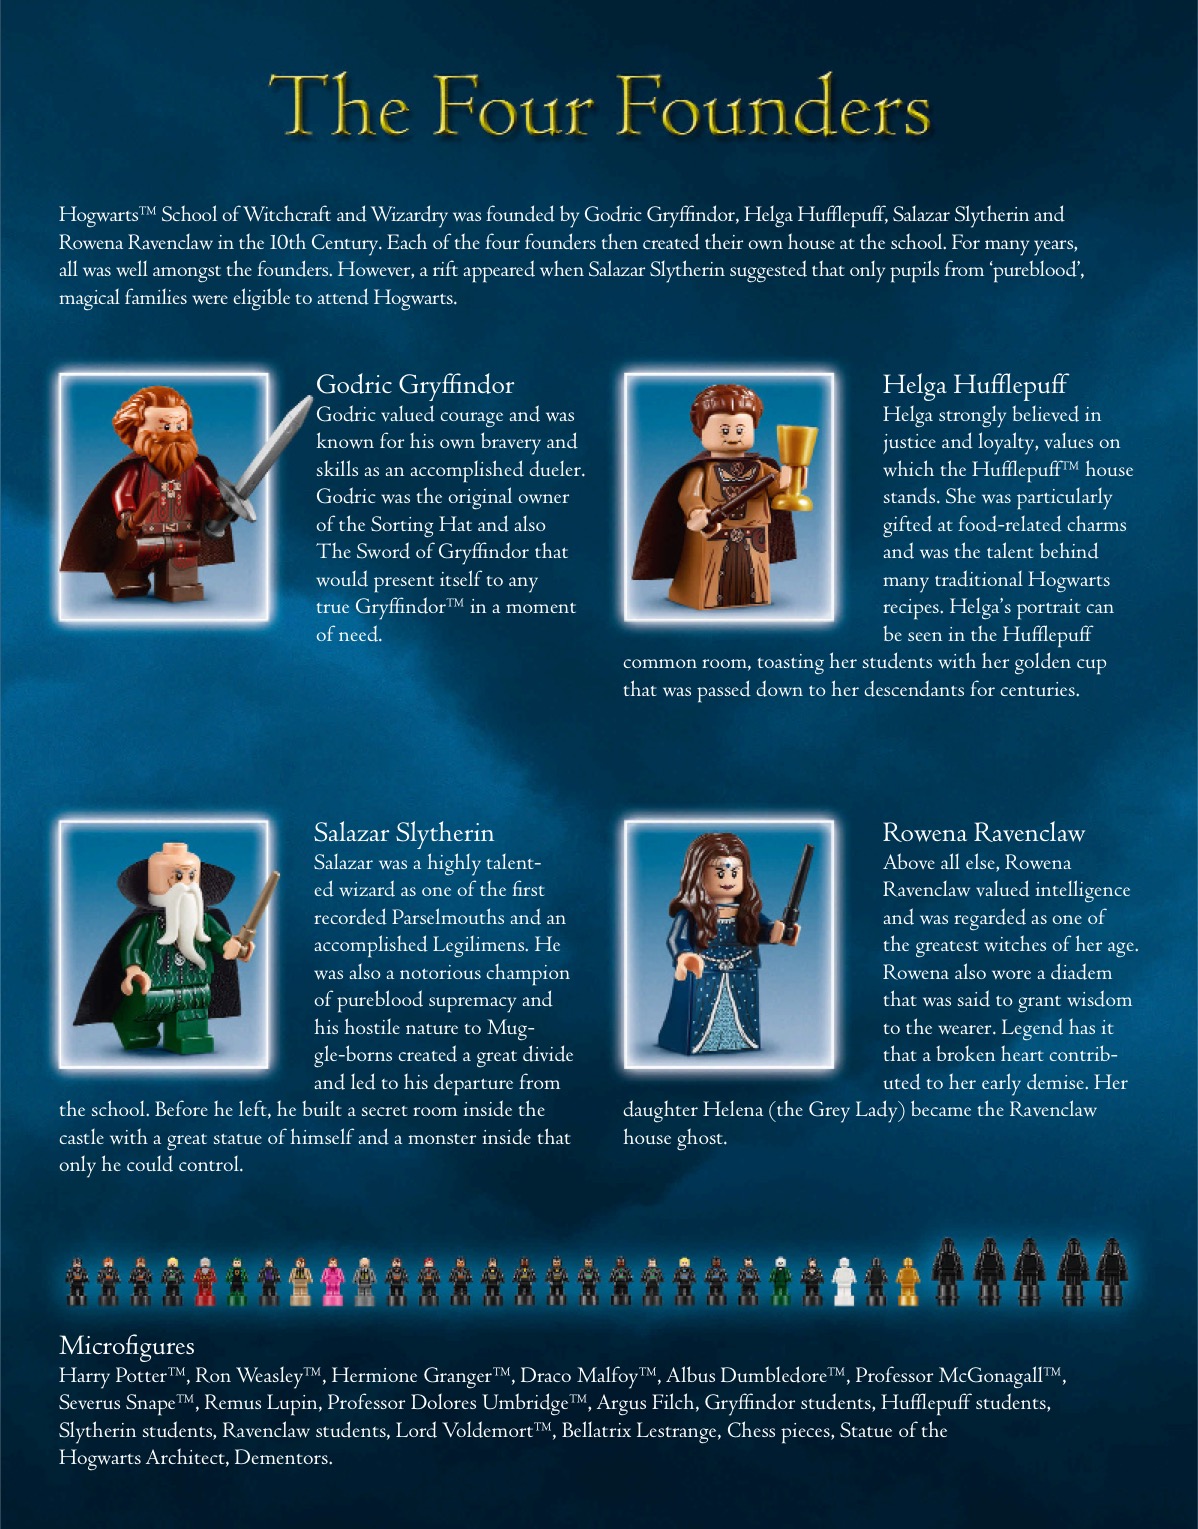 LEGO Hogwarts Castle (71043) split sections — Harry Potter Fan Zone